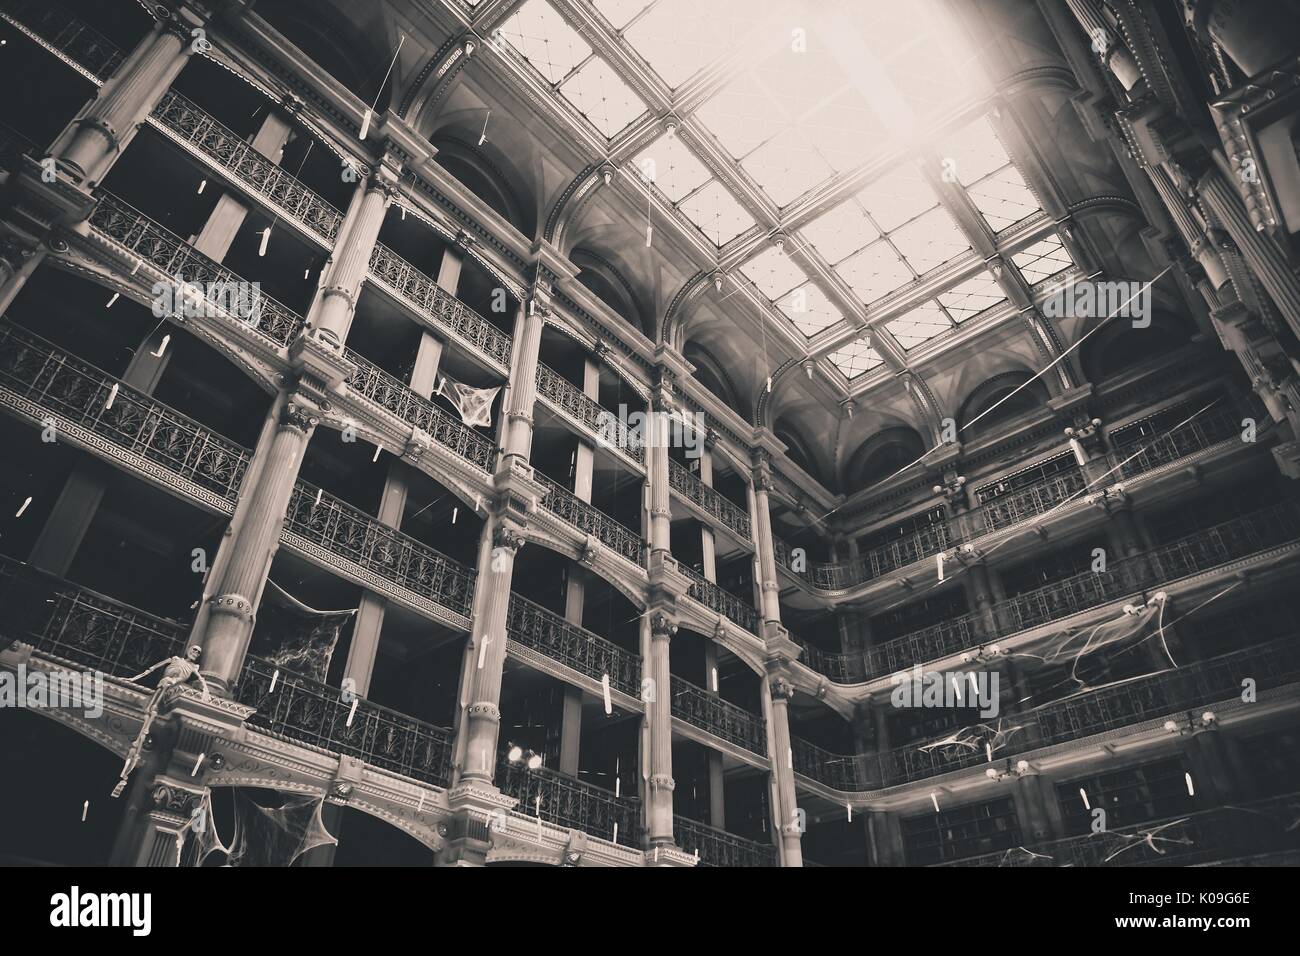 En blanco y negro de bajo ángulo de visión mirando hacia arriba en muchos de los pisos y los techos de la Biblioteca George Peabody en la Universidad Johns Hopkins, 2015. Cortesía de Eric Chen. Foto de stock